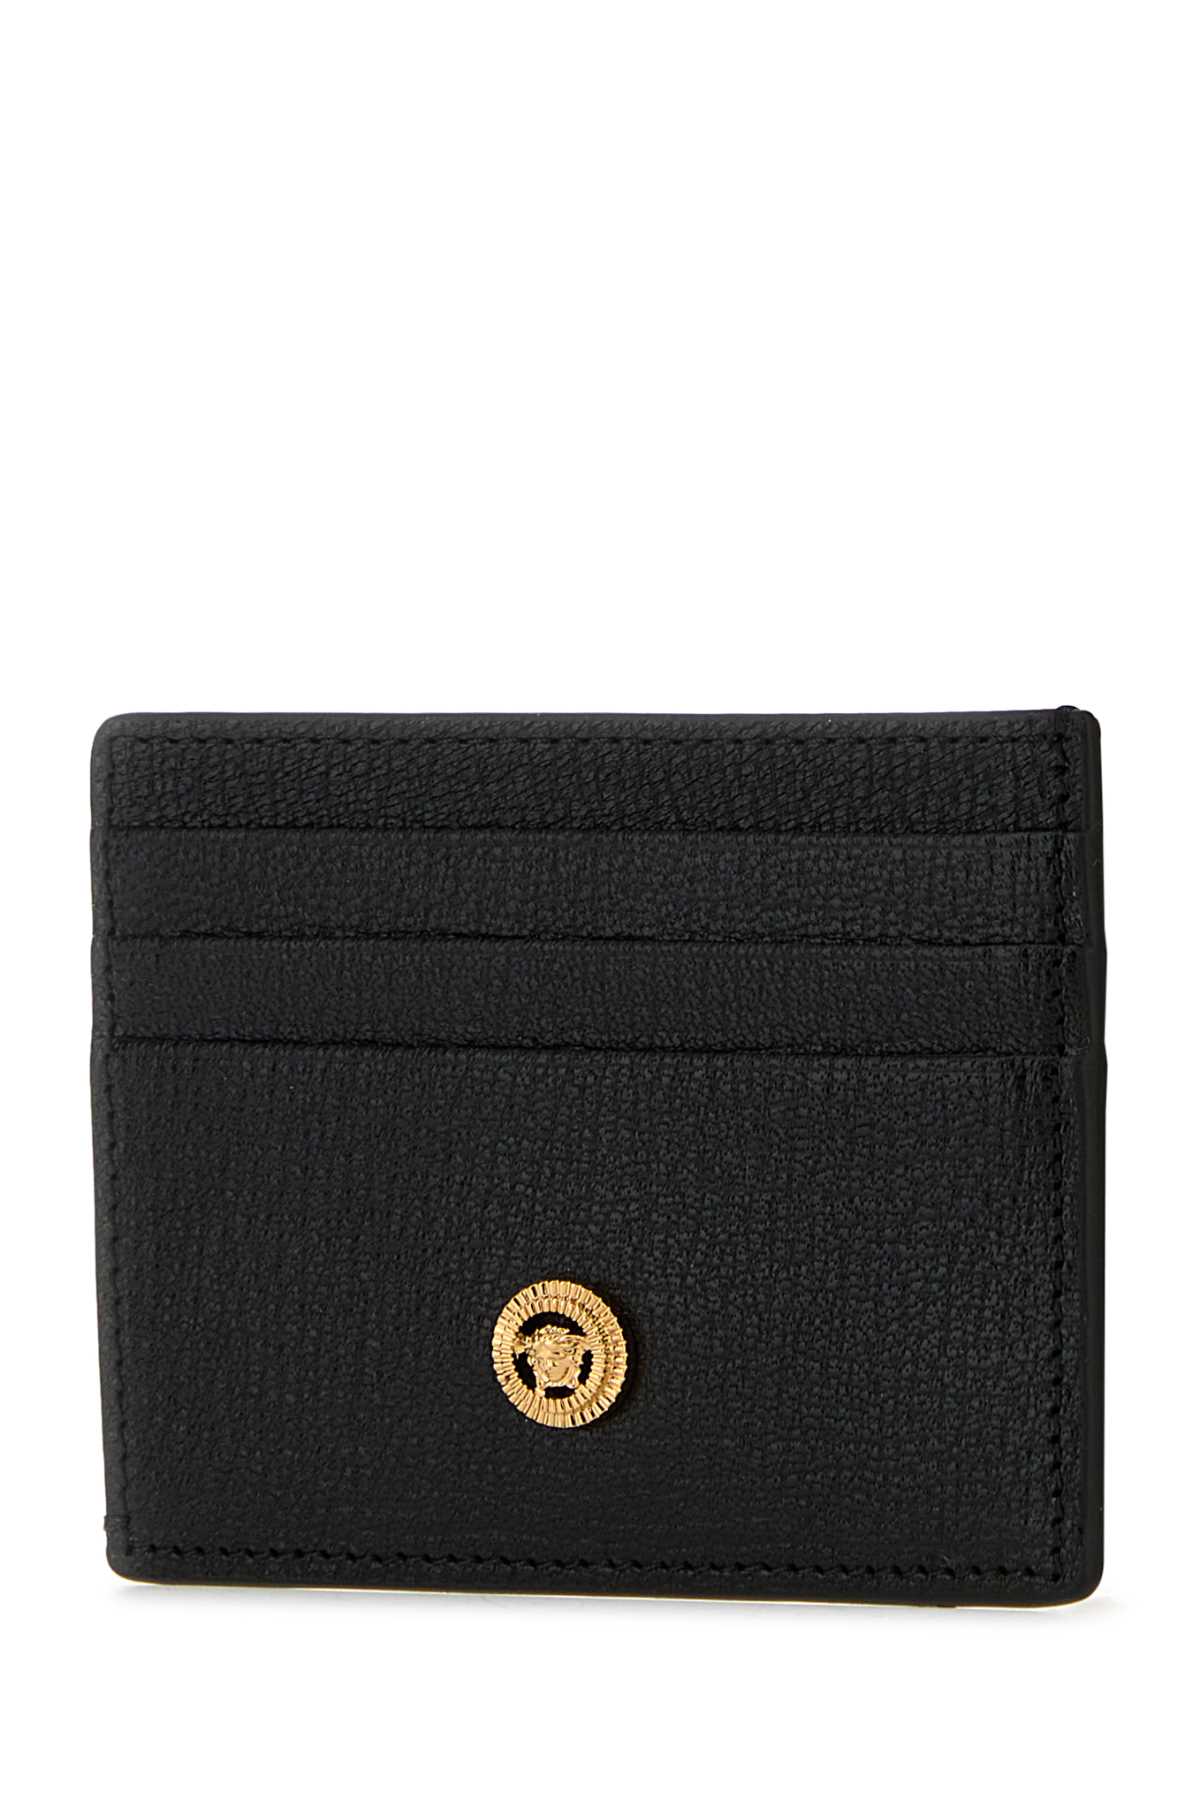 Shop Versace Black Leather Medusa Biggie Card Holder In Blackgold